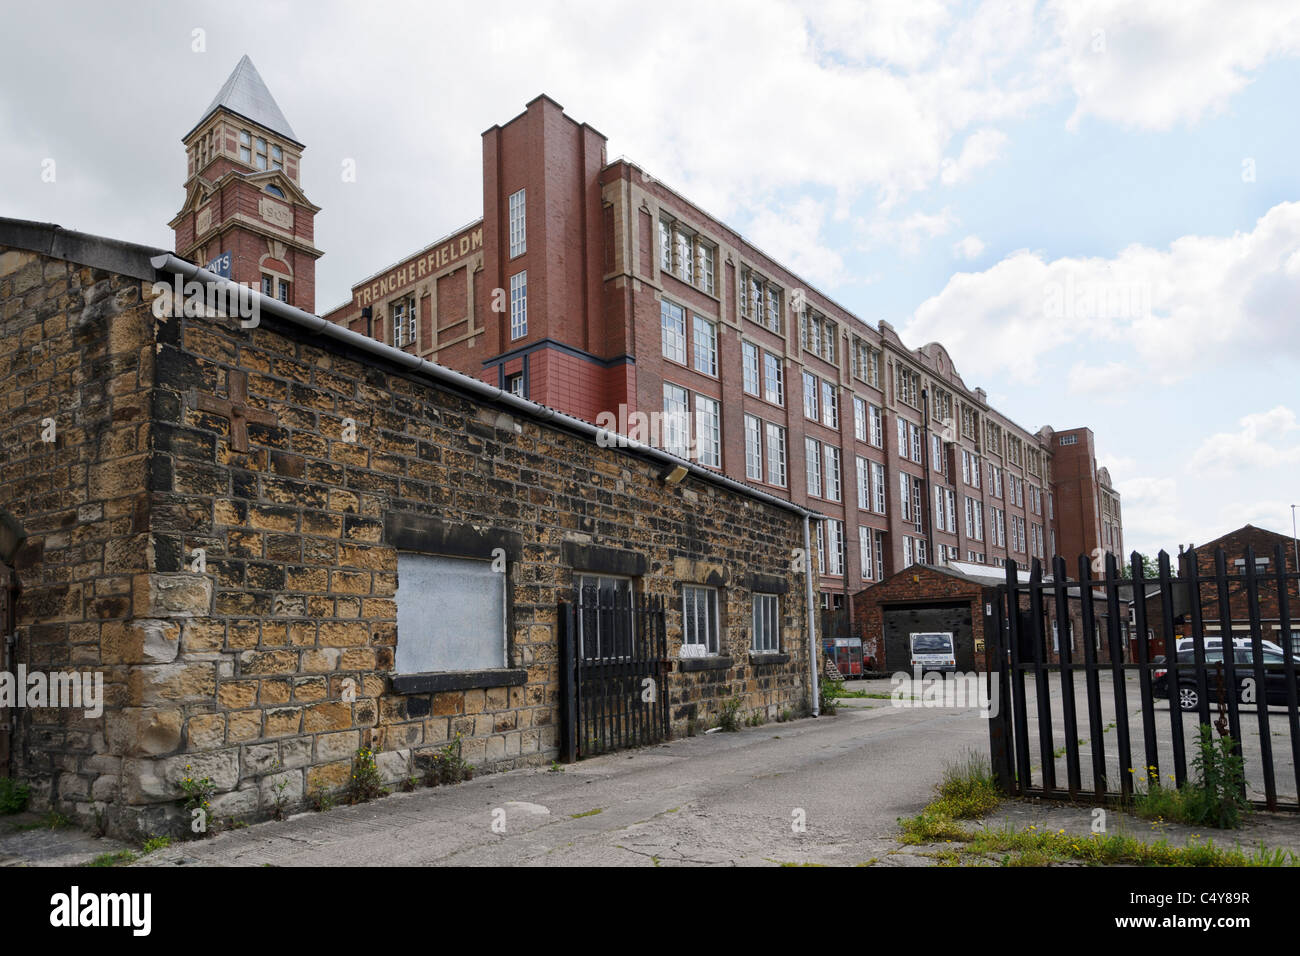 Trencherfield Mill est une filature de coton sur le canal de Leeds et Liverpool, Wigan, Greater Manchester. Banque D'Images